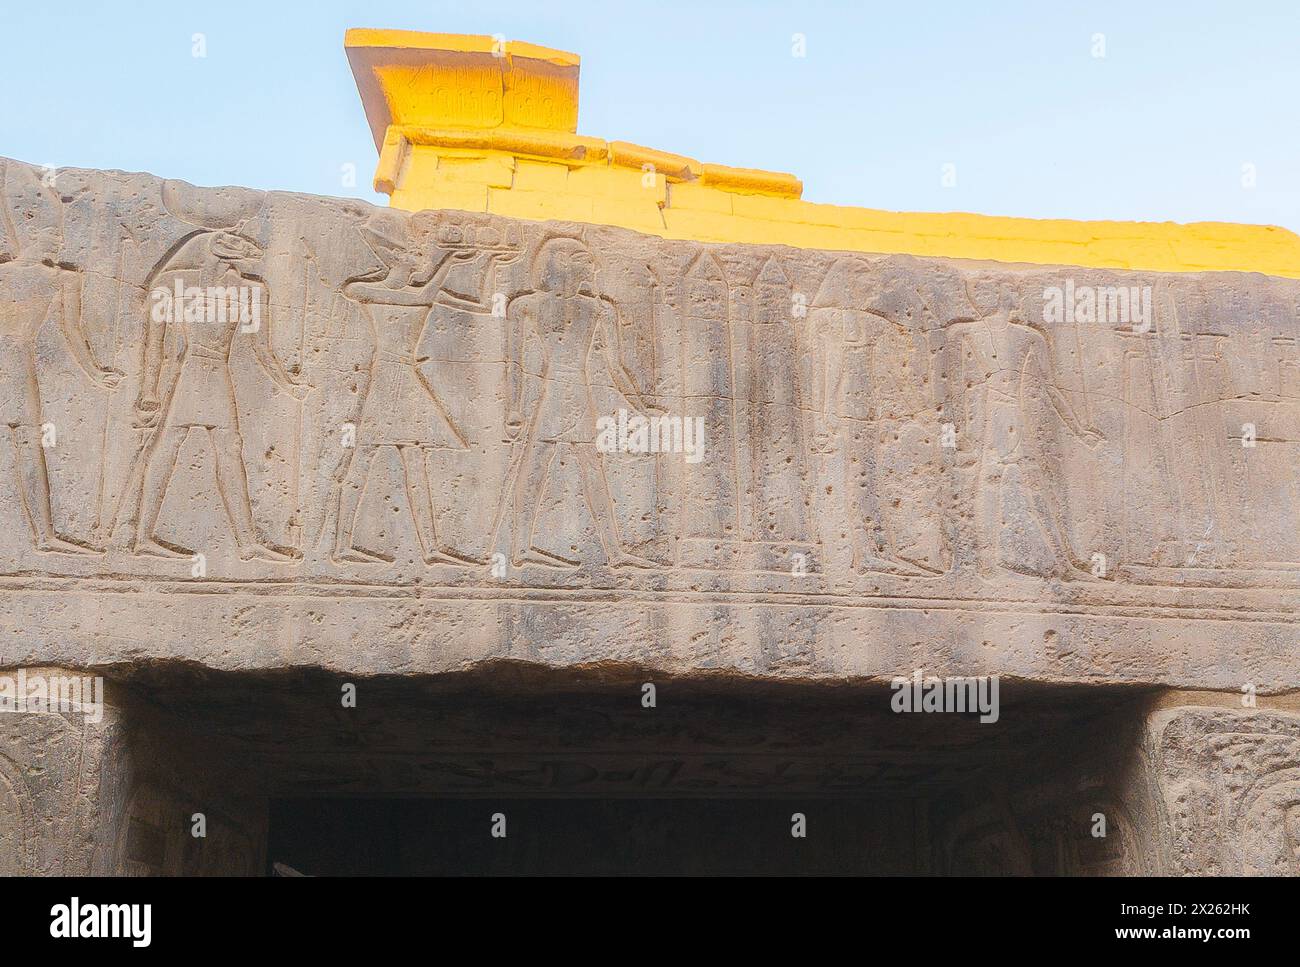 Egitto, tempio di Luxor, moschea di Abu el Haggag, obelischi scolpiti sull'architrave. Foto Stock